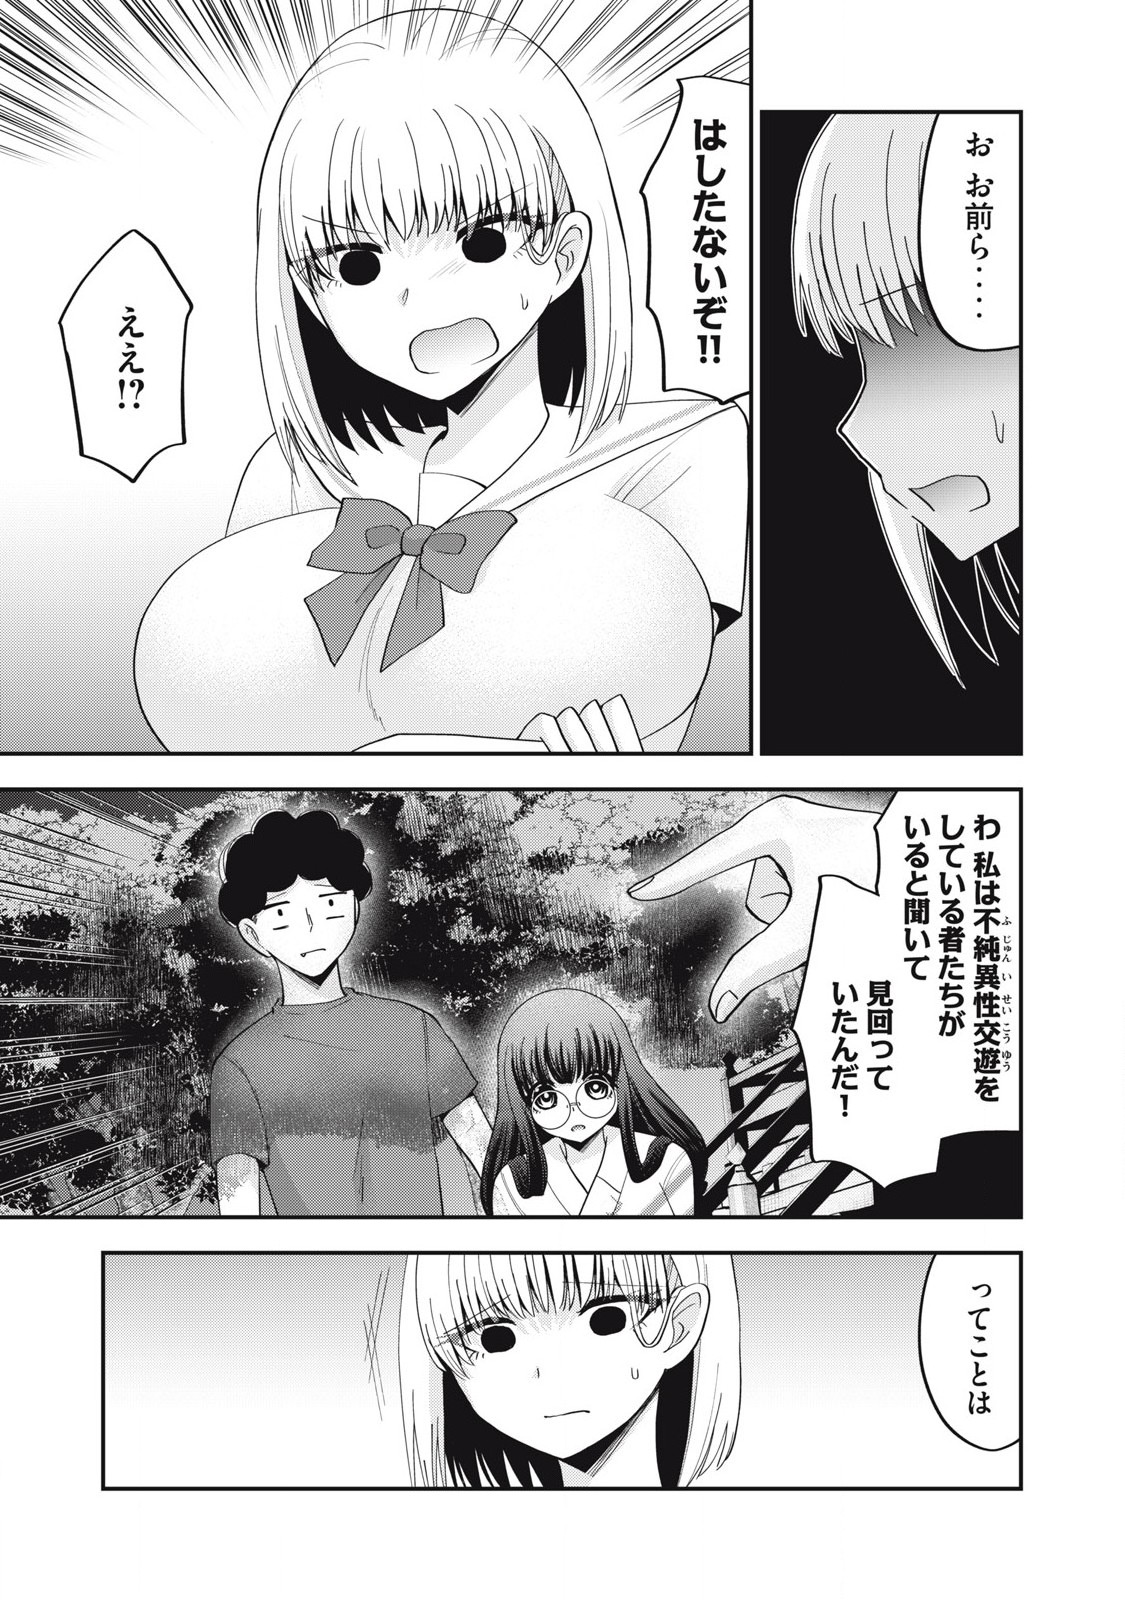 Yumeutsutsu no Hana no Sono - Chapter 22 - Page 13